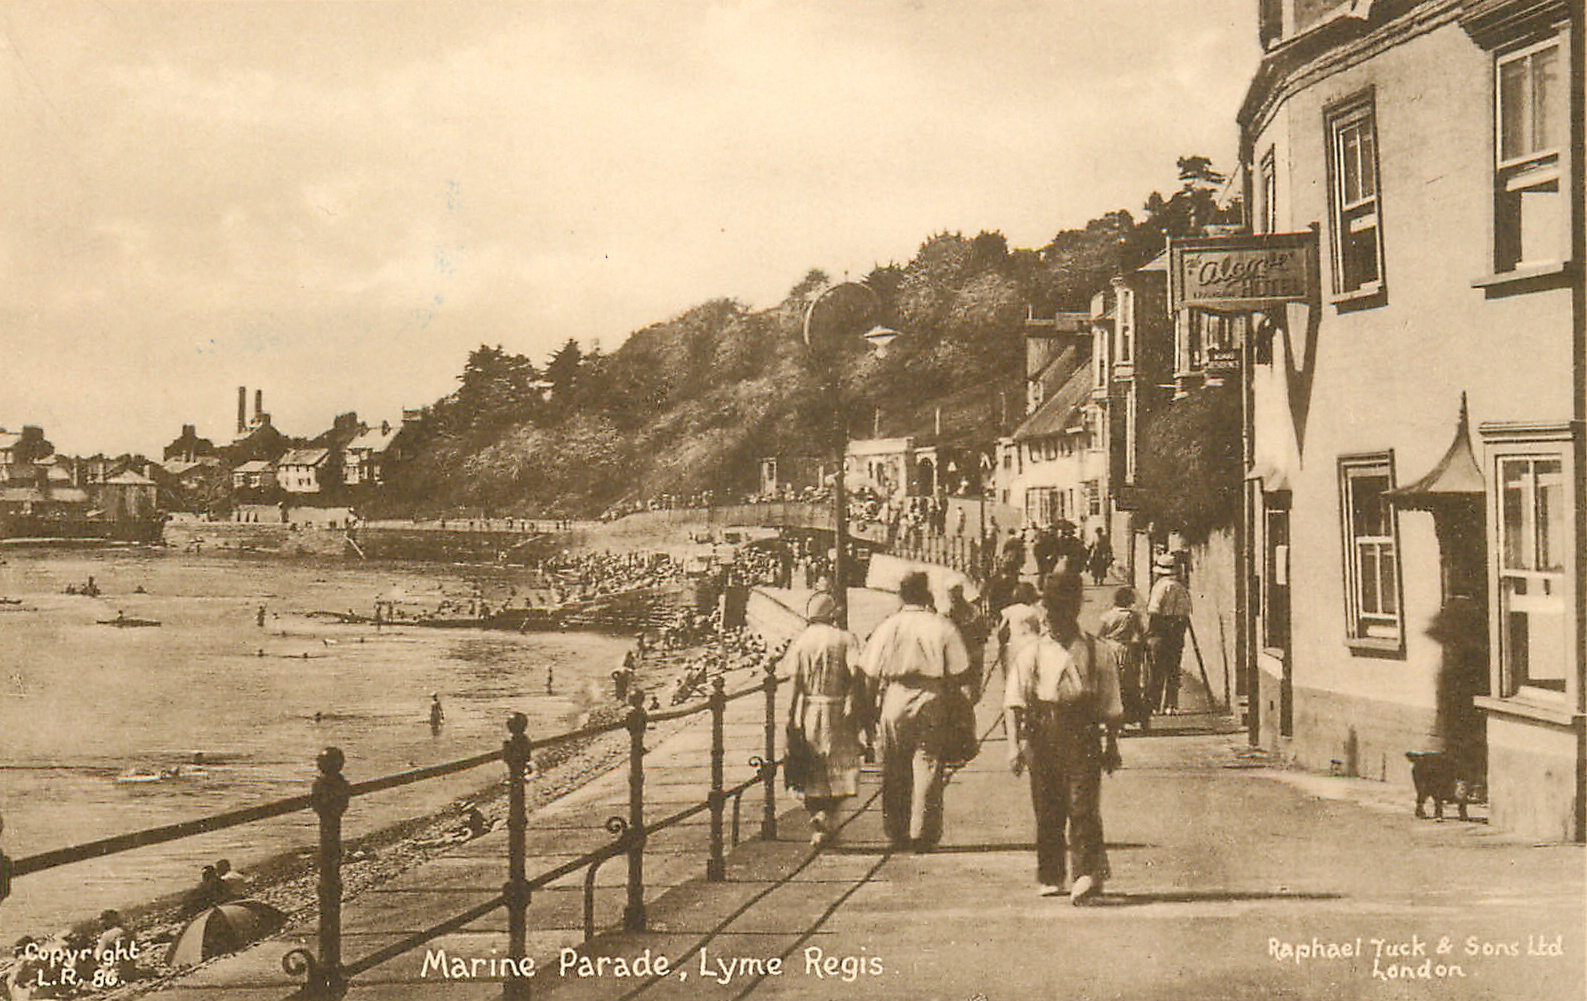 The Alcove Hotel, Marine Parade, Lyme Regis circa 1937